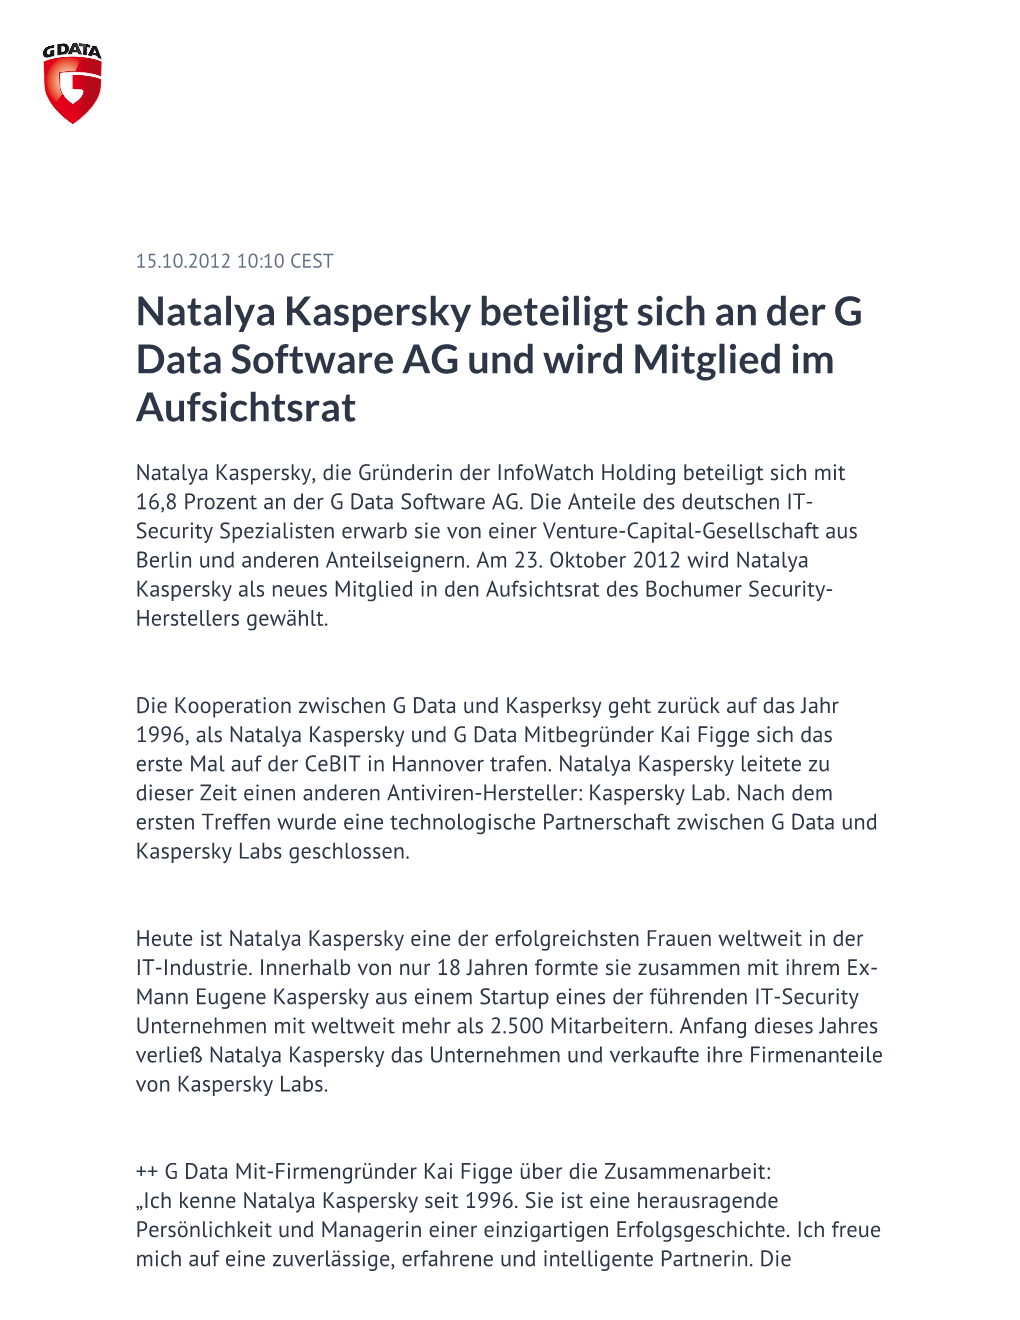 Natalya Kaspersky Beteiligt Sich an Der G Data Software AG Und Wird Mitglied Im Aufsichtsrat